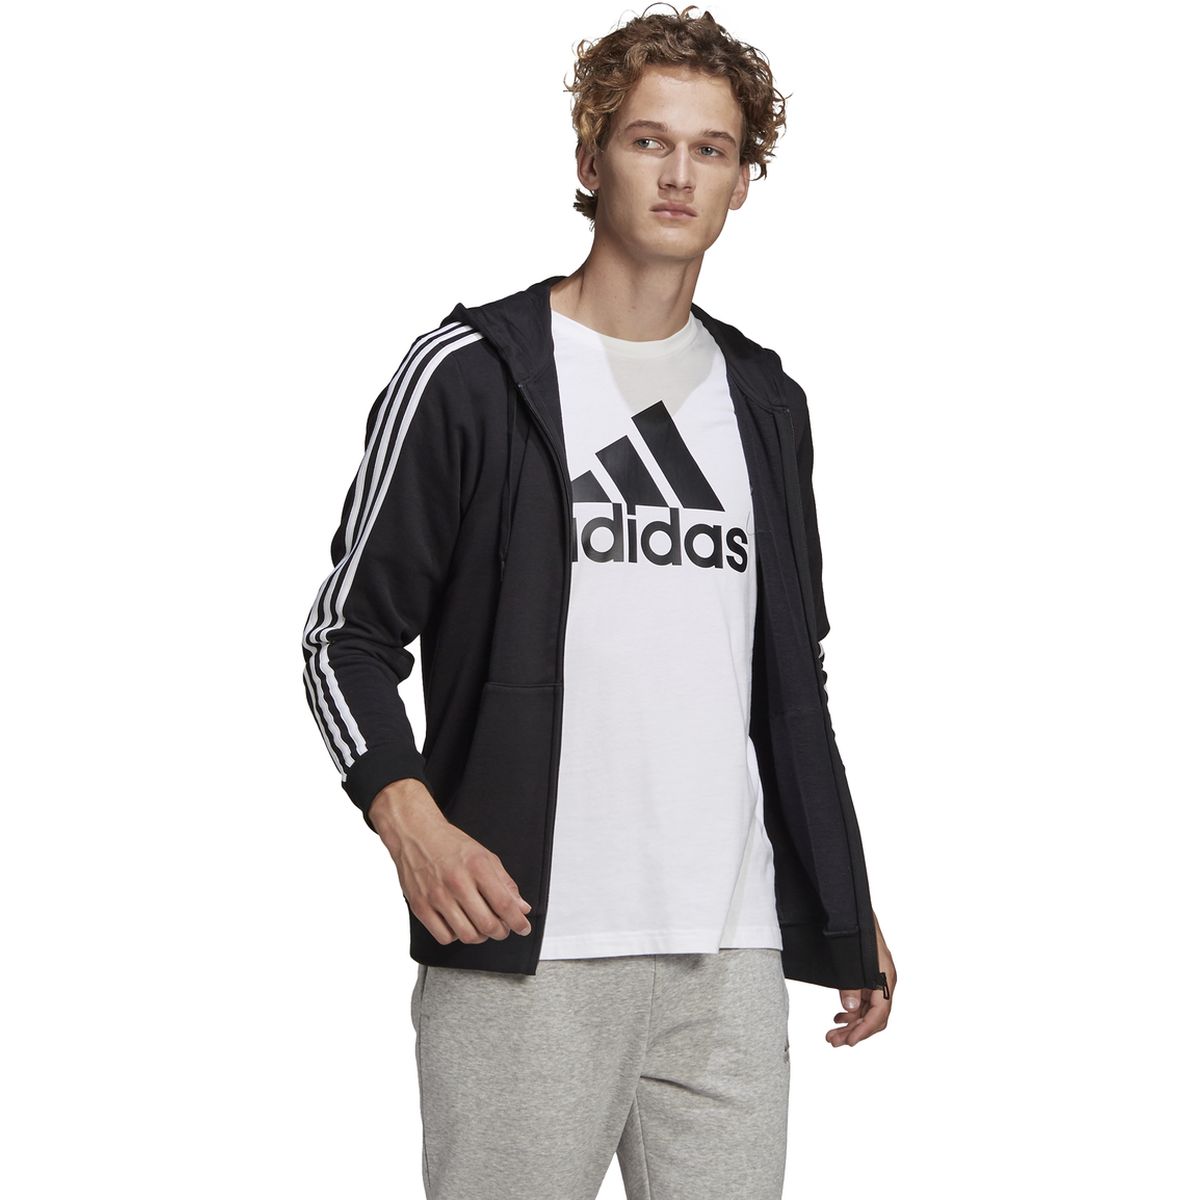 Adidas Essentials French Terry 3-Streifen Kapuzenjacke Herren_1